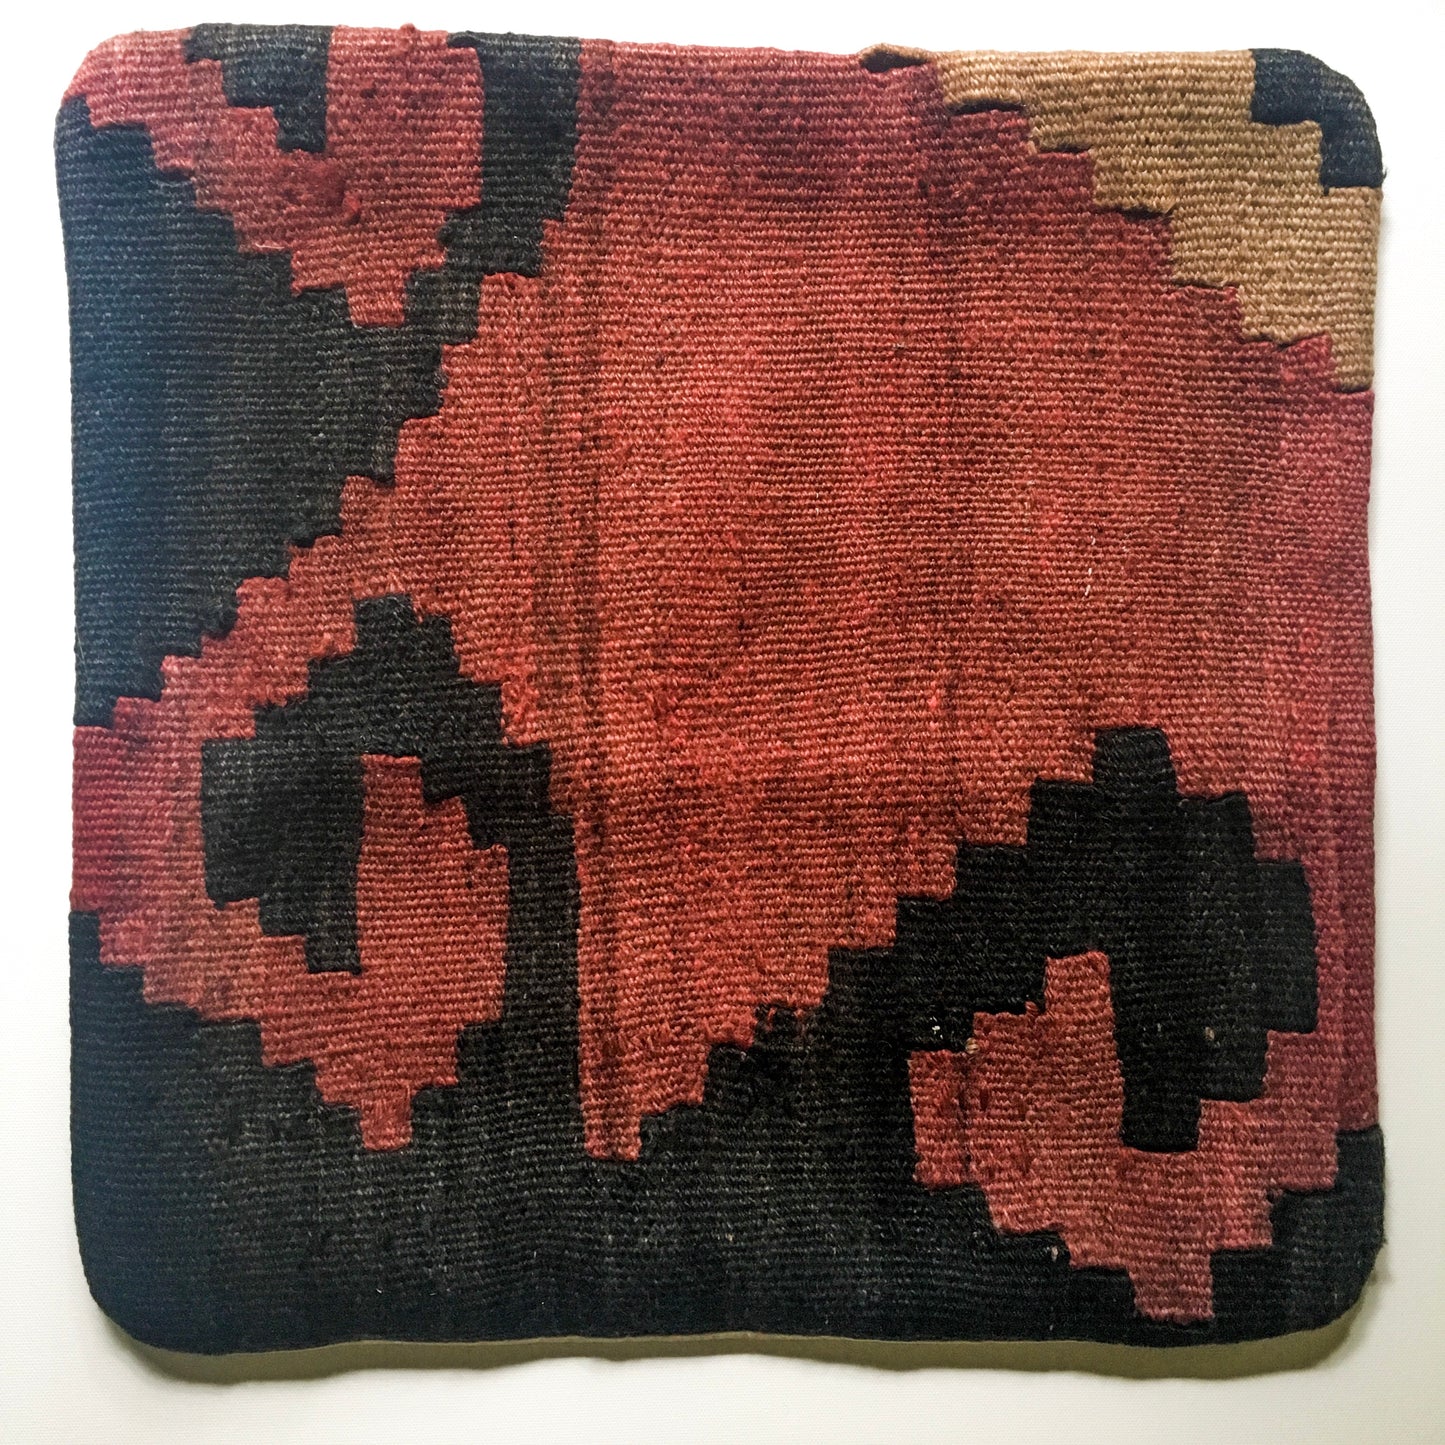 Vintage Kilim Pillow - steps pattern